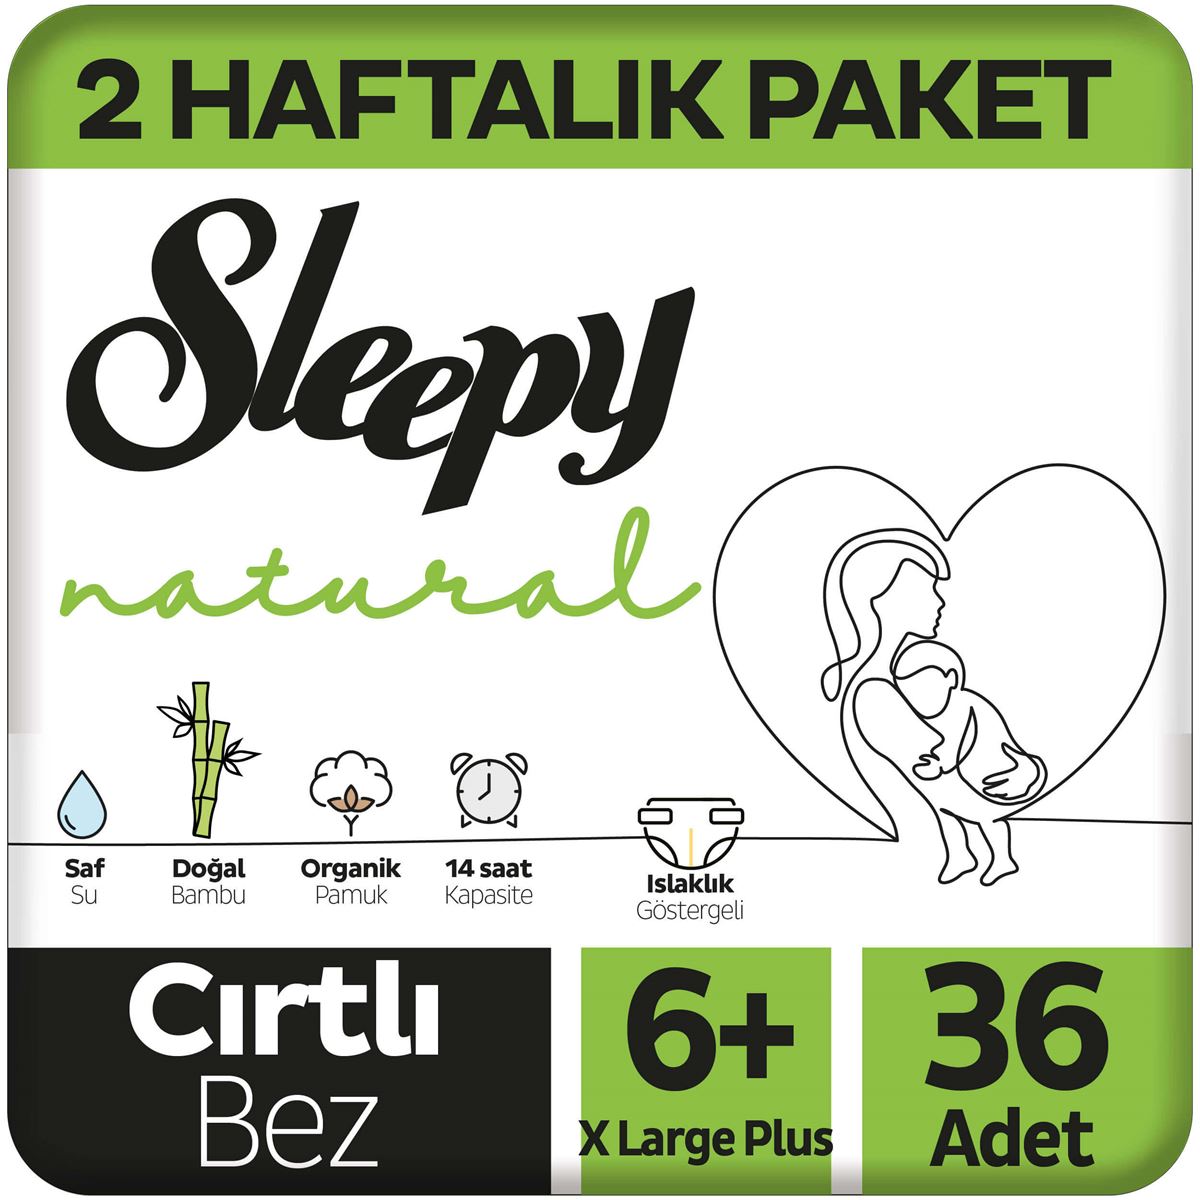 Sleepy Natural 2 Haftalık Paket Bebek Bezi 6+ Numara Xlarge Plus 36 Adet